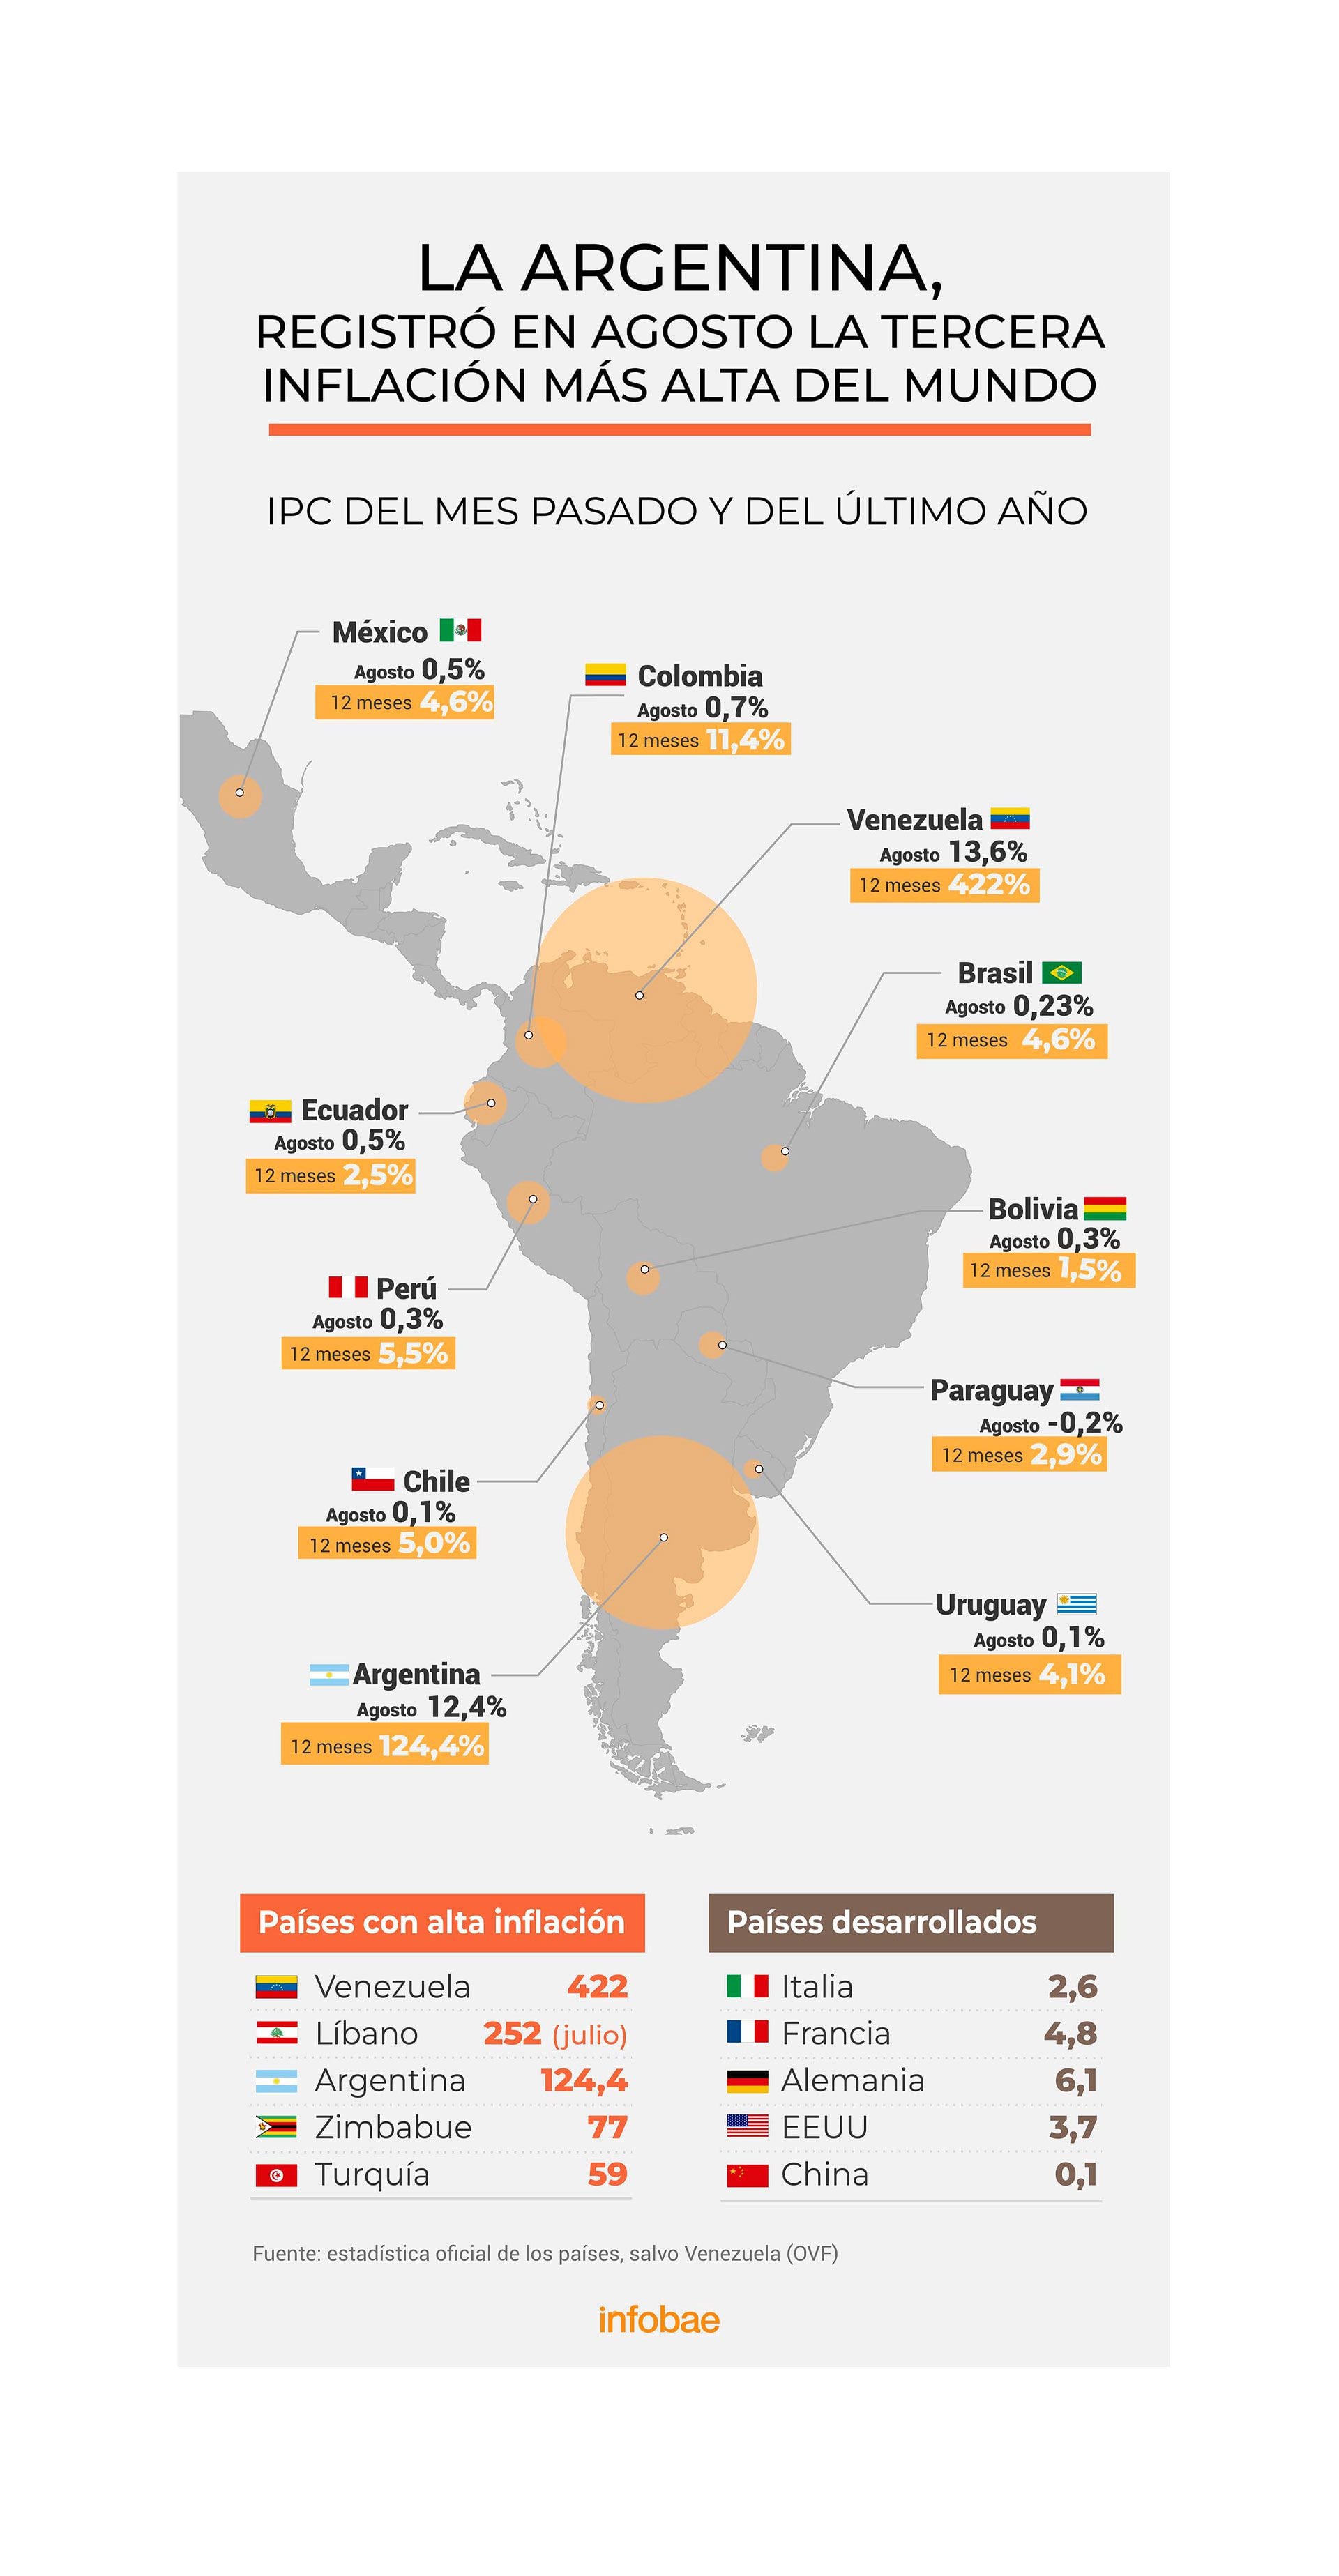 Inflación en agosto y en el último año
Infografía de Marcelo Regalado